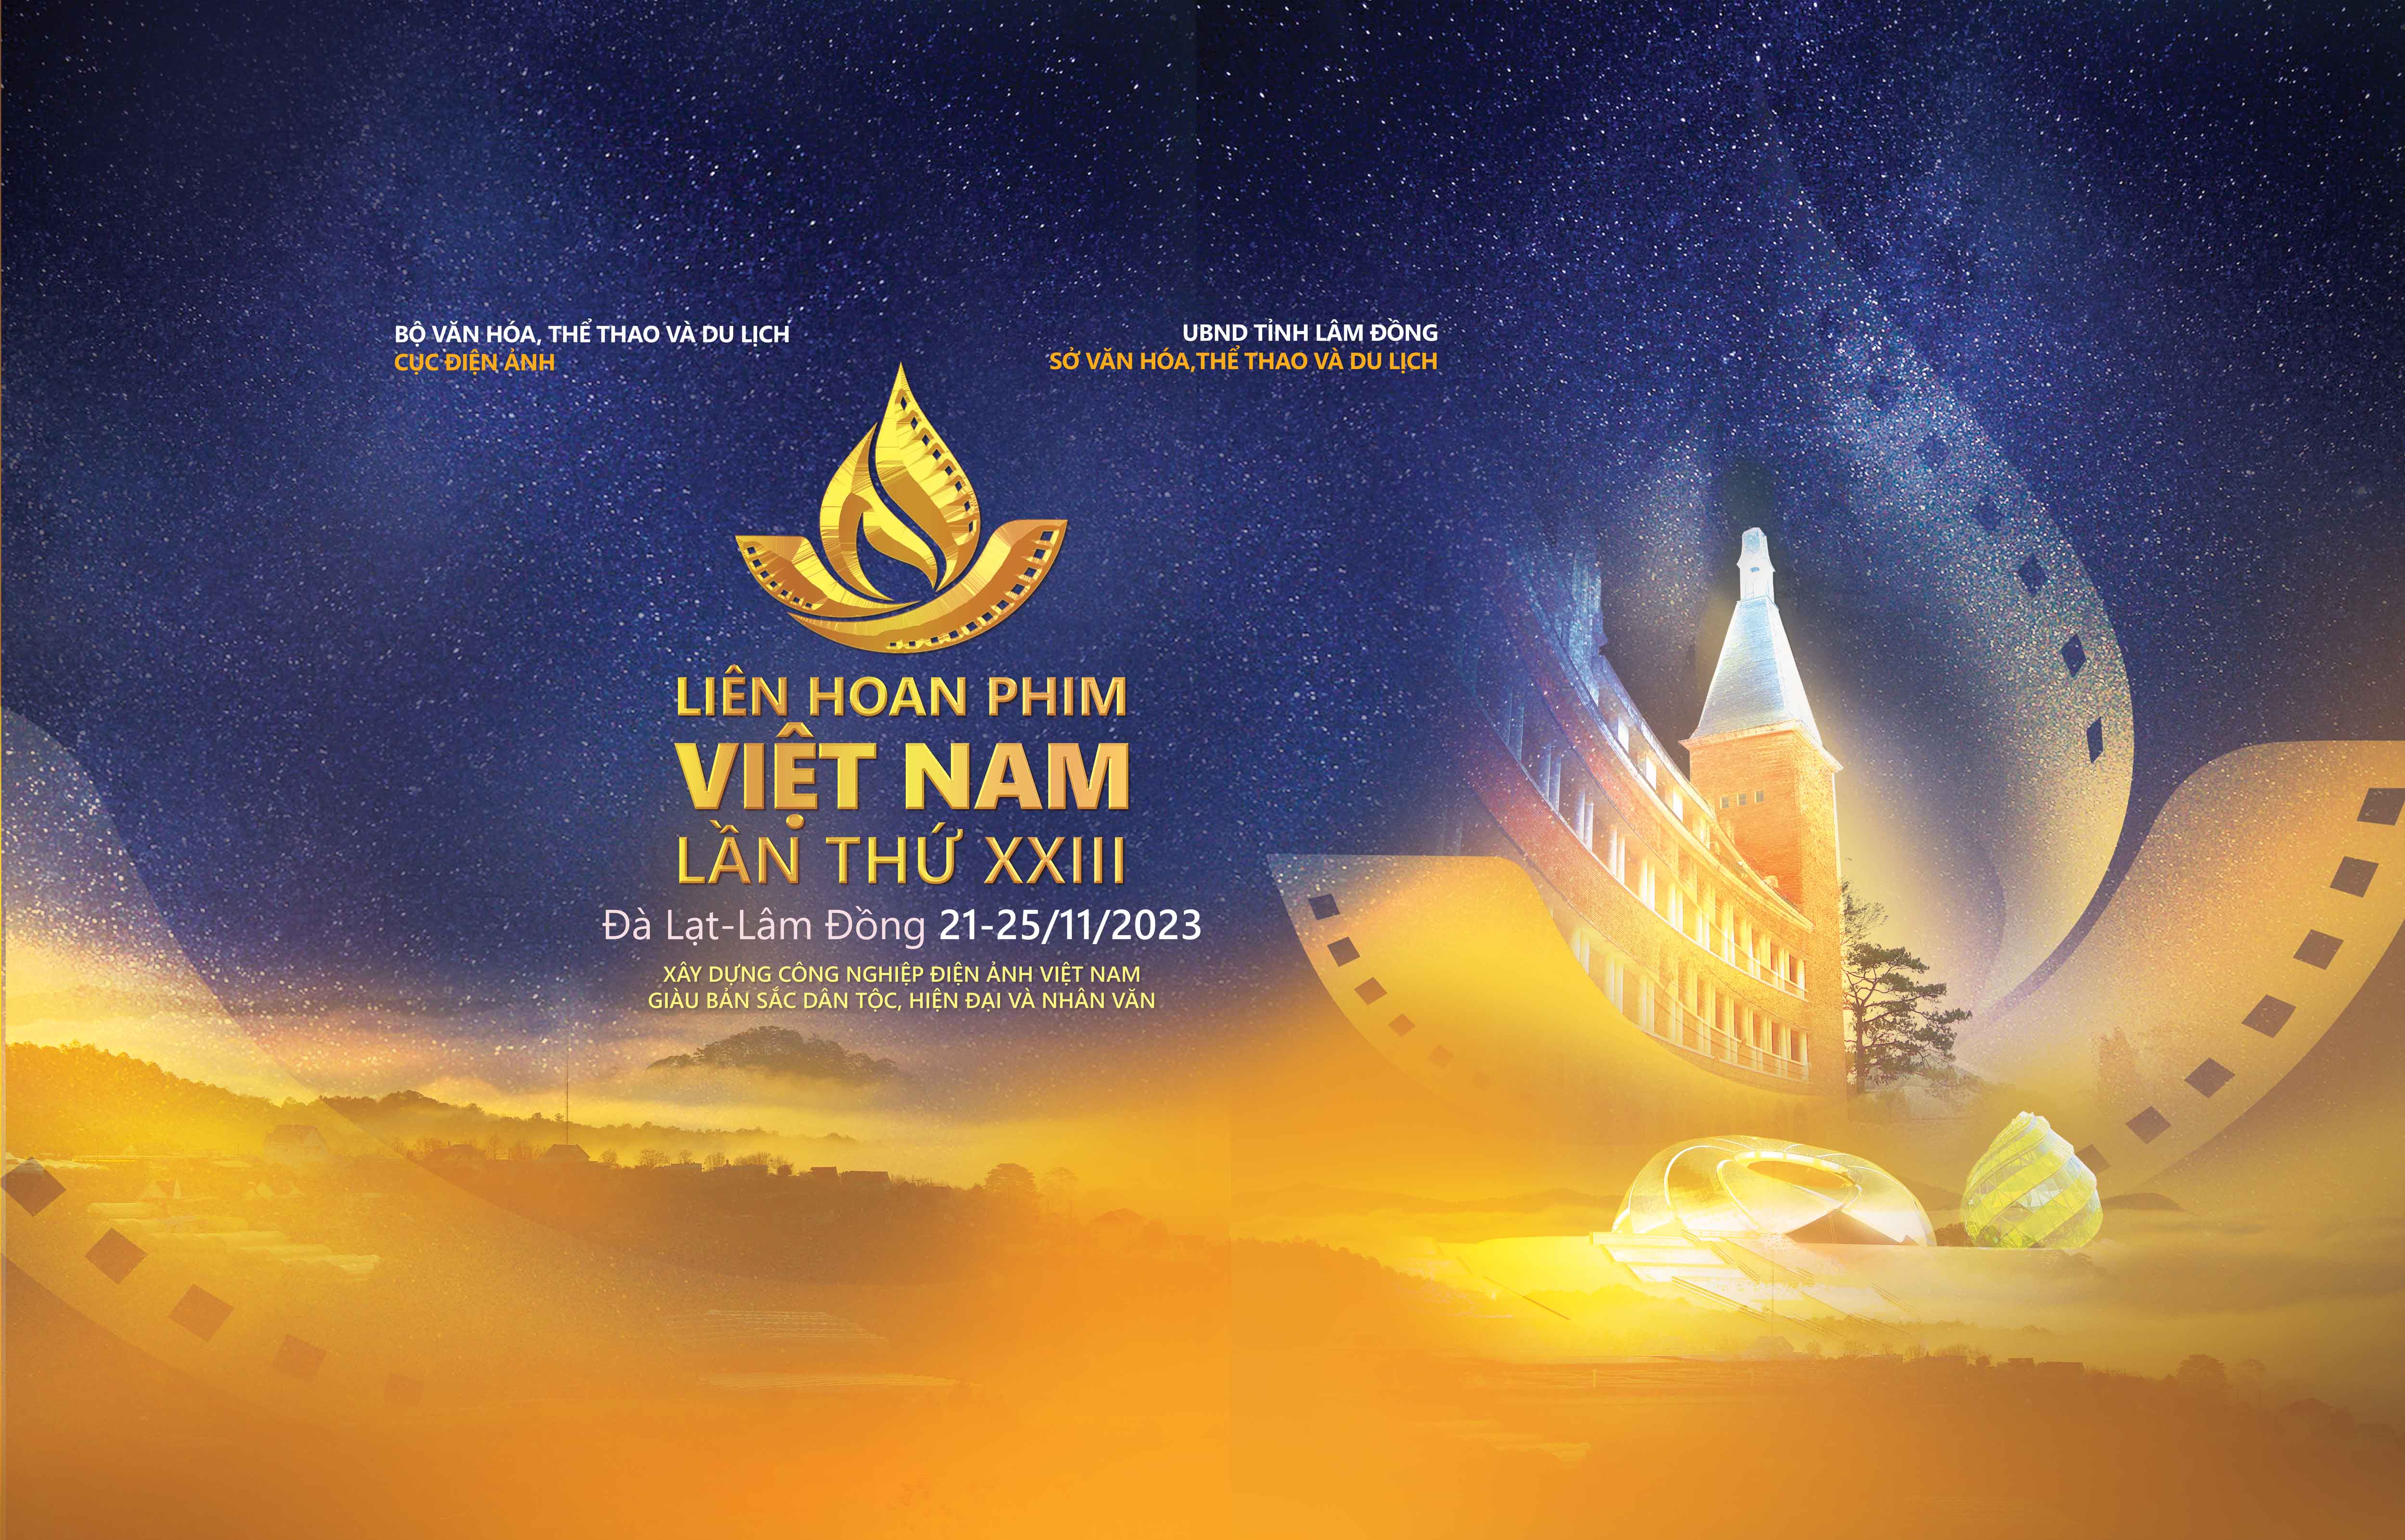 Thông cáo báo chí Liên hoan Phim Việt Nam lần thứ XXIII